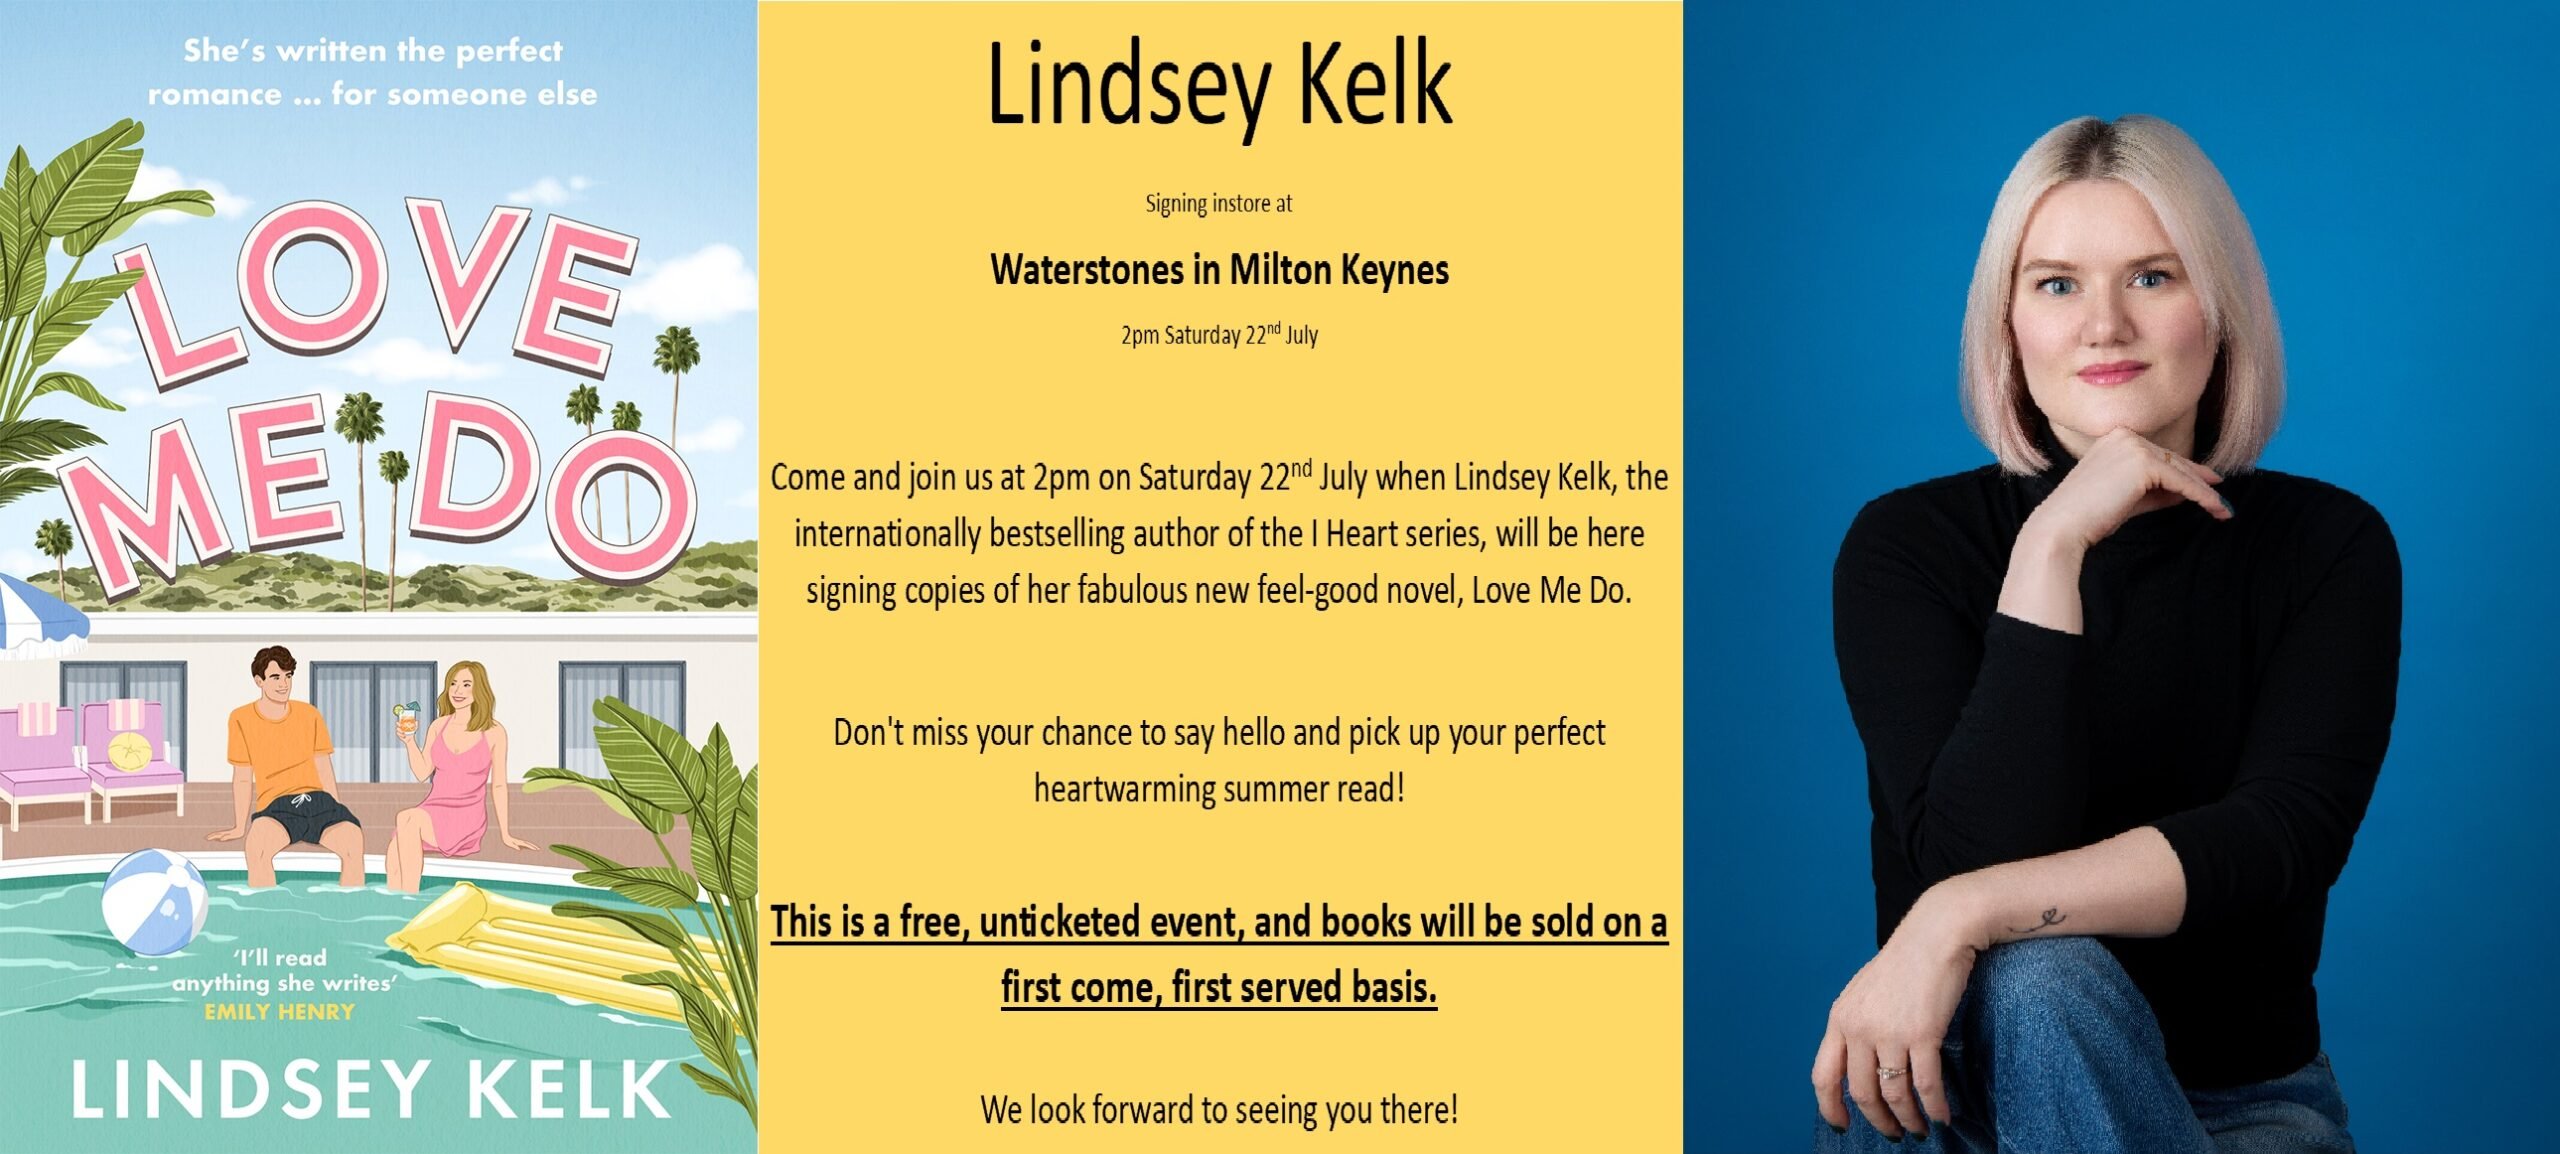 Meet bestselling romance author Lindsey Kelk! Top Image